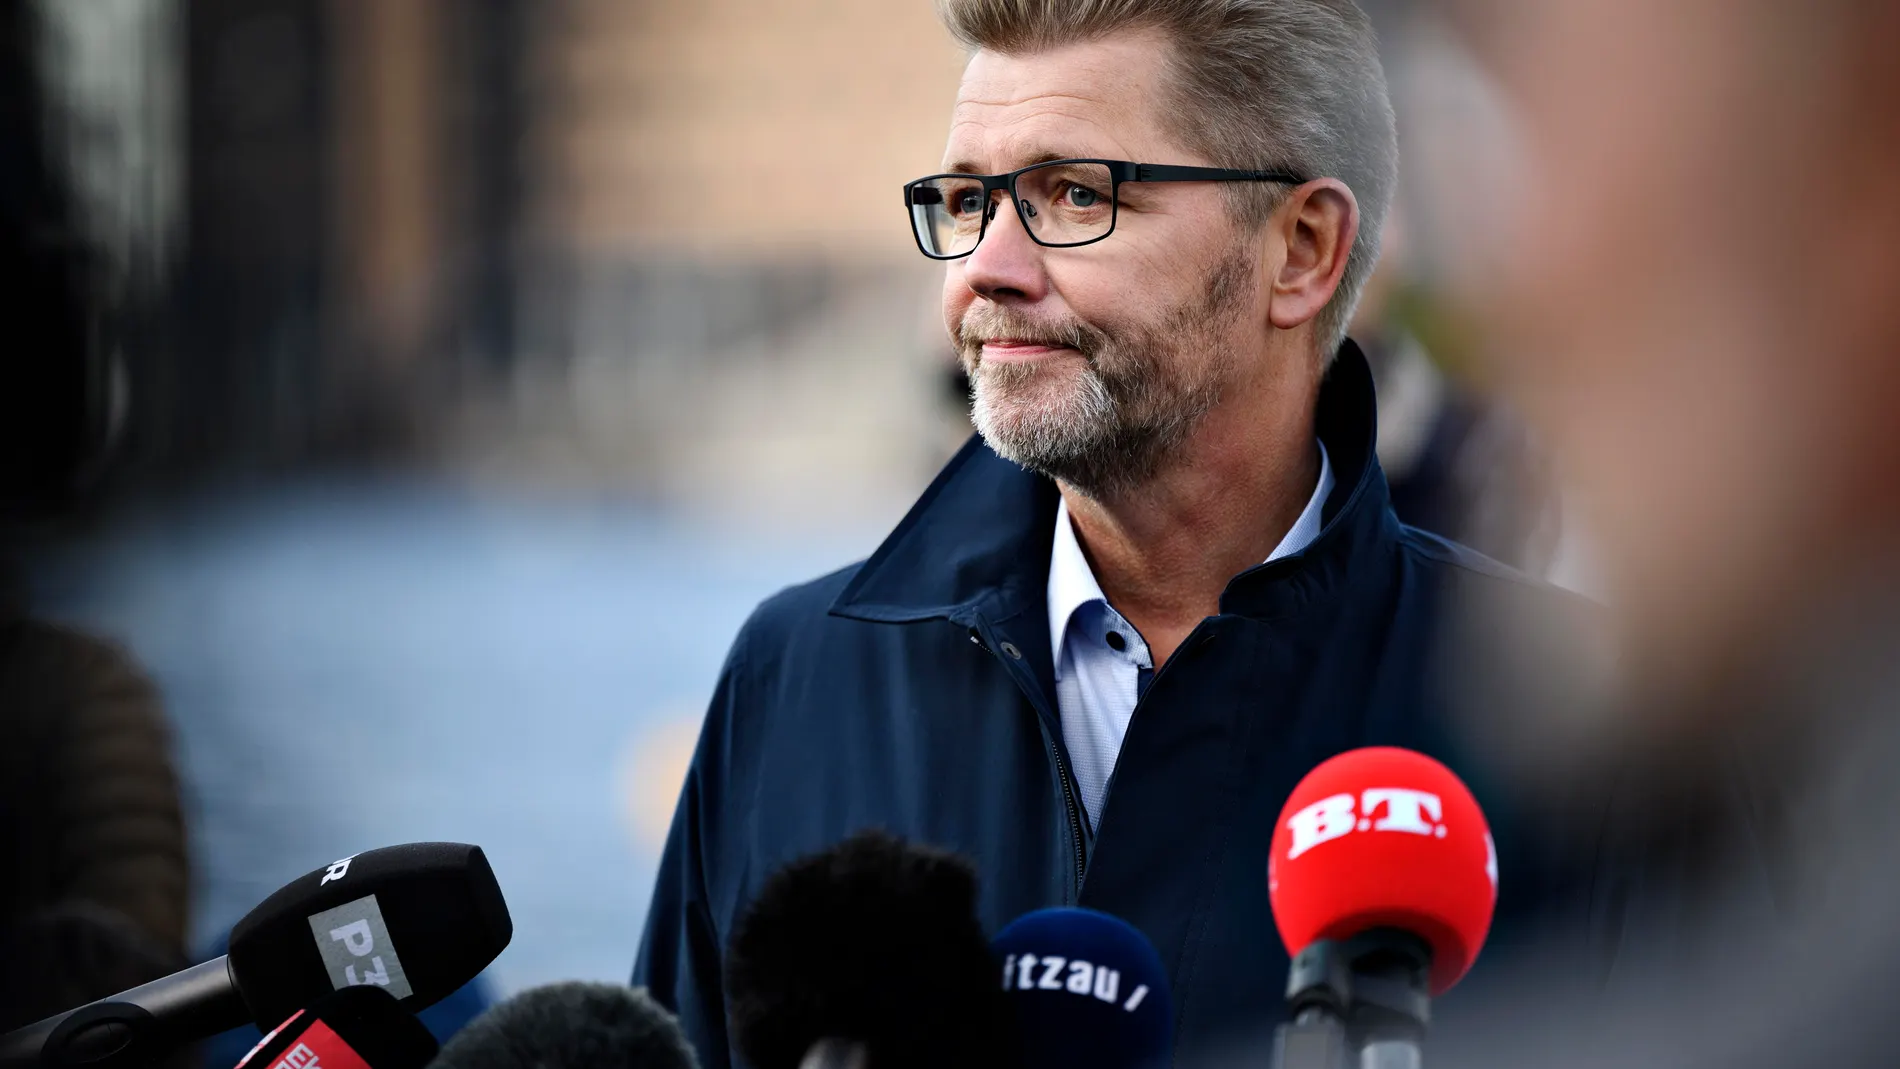 Frank Jensen se vio obligado a dimitir el lunes como alcalde de Copenhague por la cadena de denuncias de acoso sexual